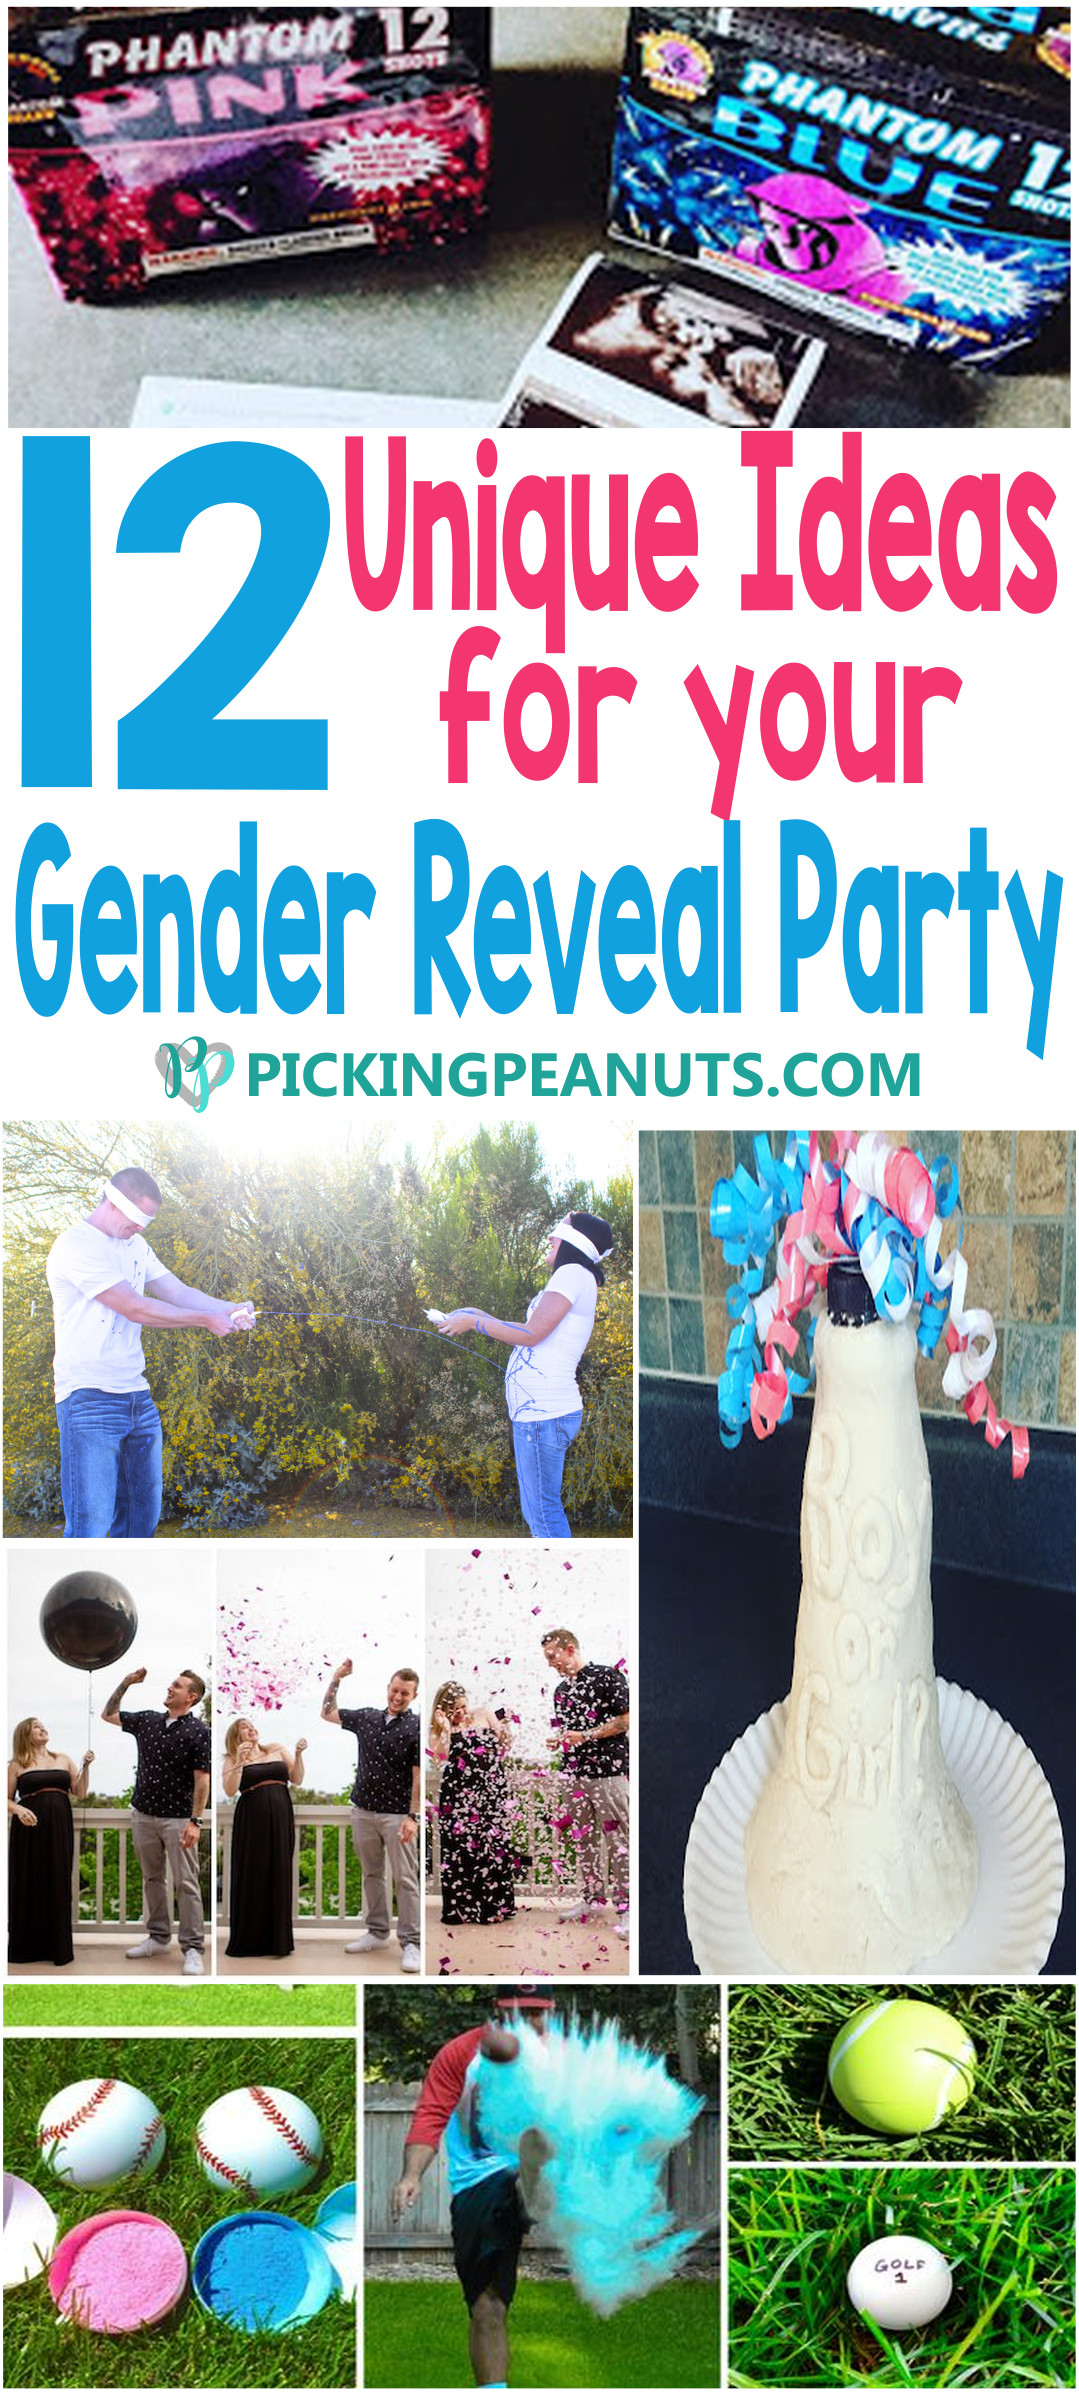 Unique Baby Gender Reveal Party Ideas
 12 Unique Gender Reveal Party Ideas PickingPeanuts